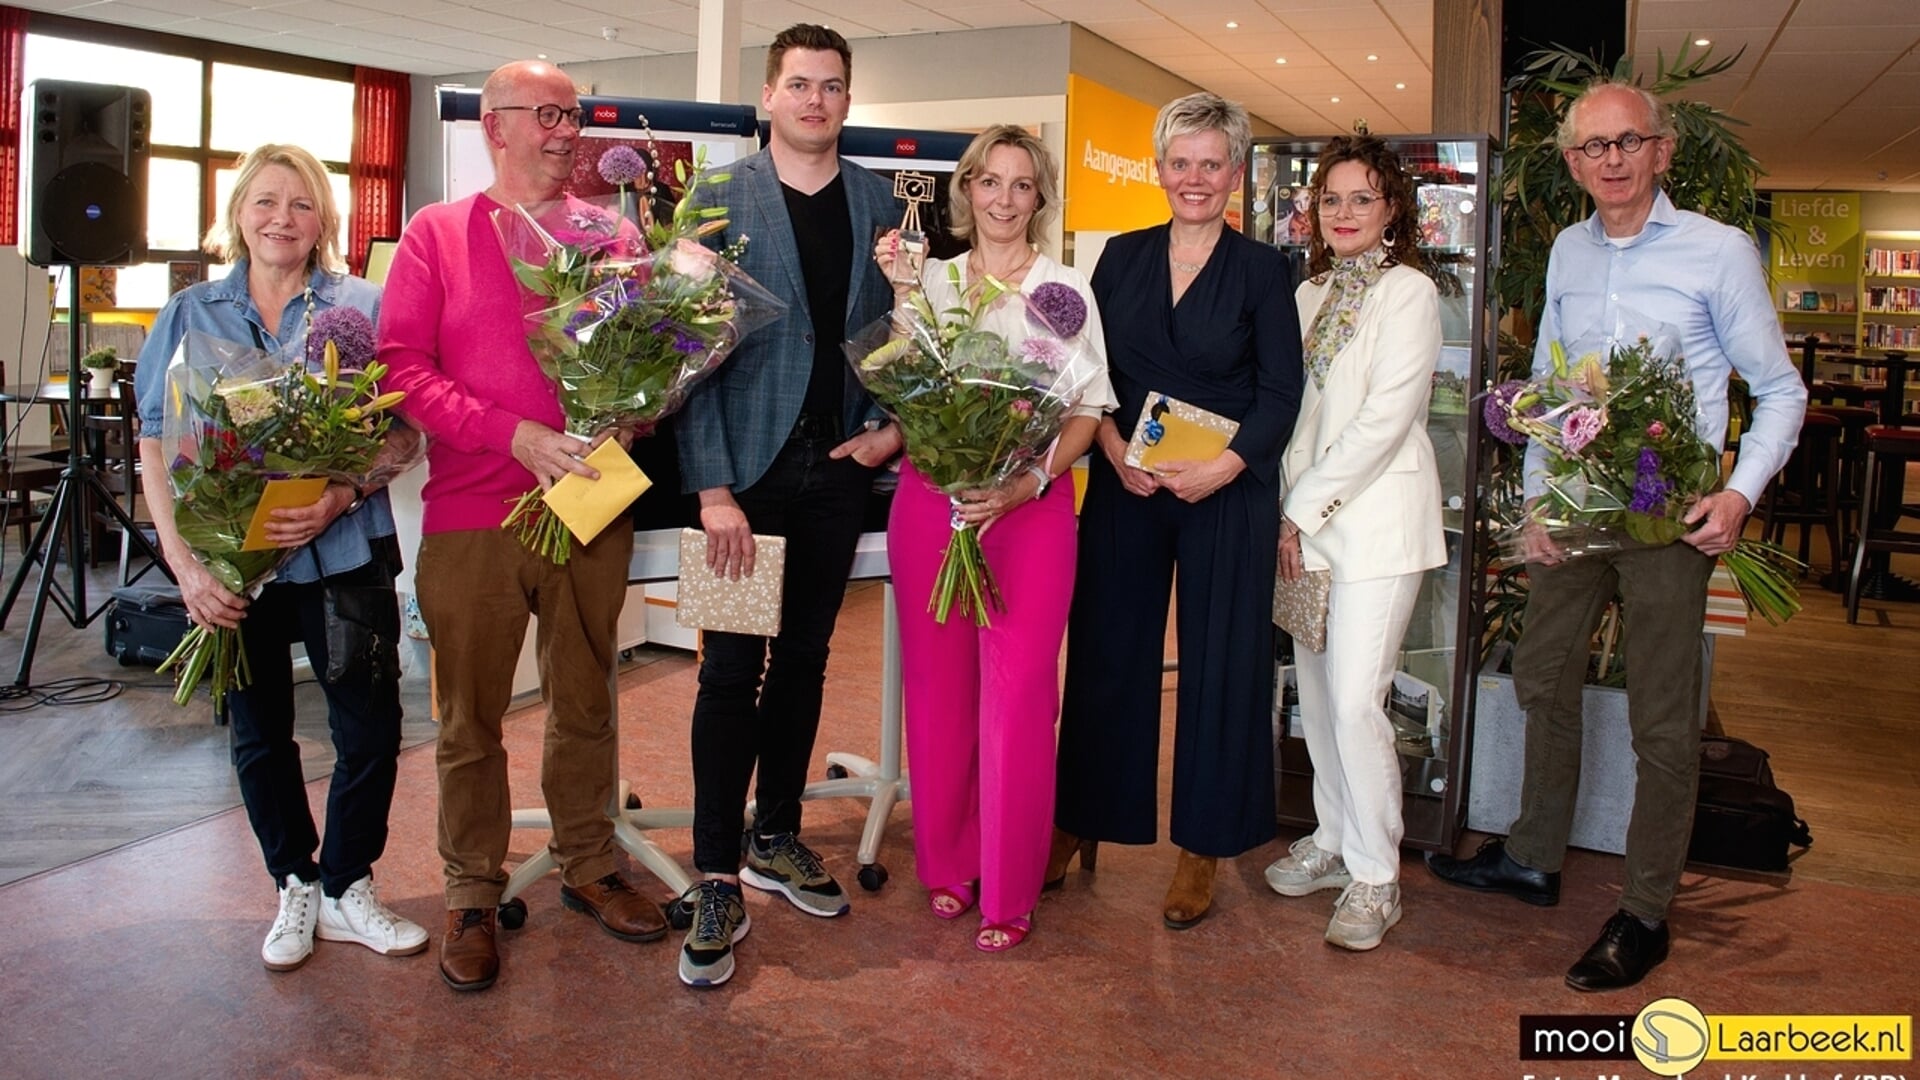 Vlnr: Liesbeth van Boxtel (jury), Sjef van den Broek (gastjury), Robin Verheggen, Monique van Rixtel, Annemarie Rechters, Eefje Timmers (finalisten) en Joost Duppen (jury)